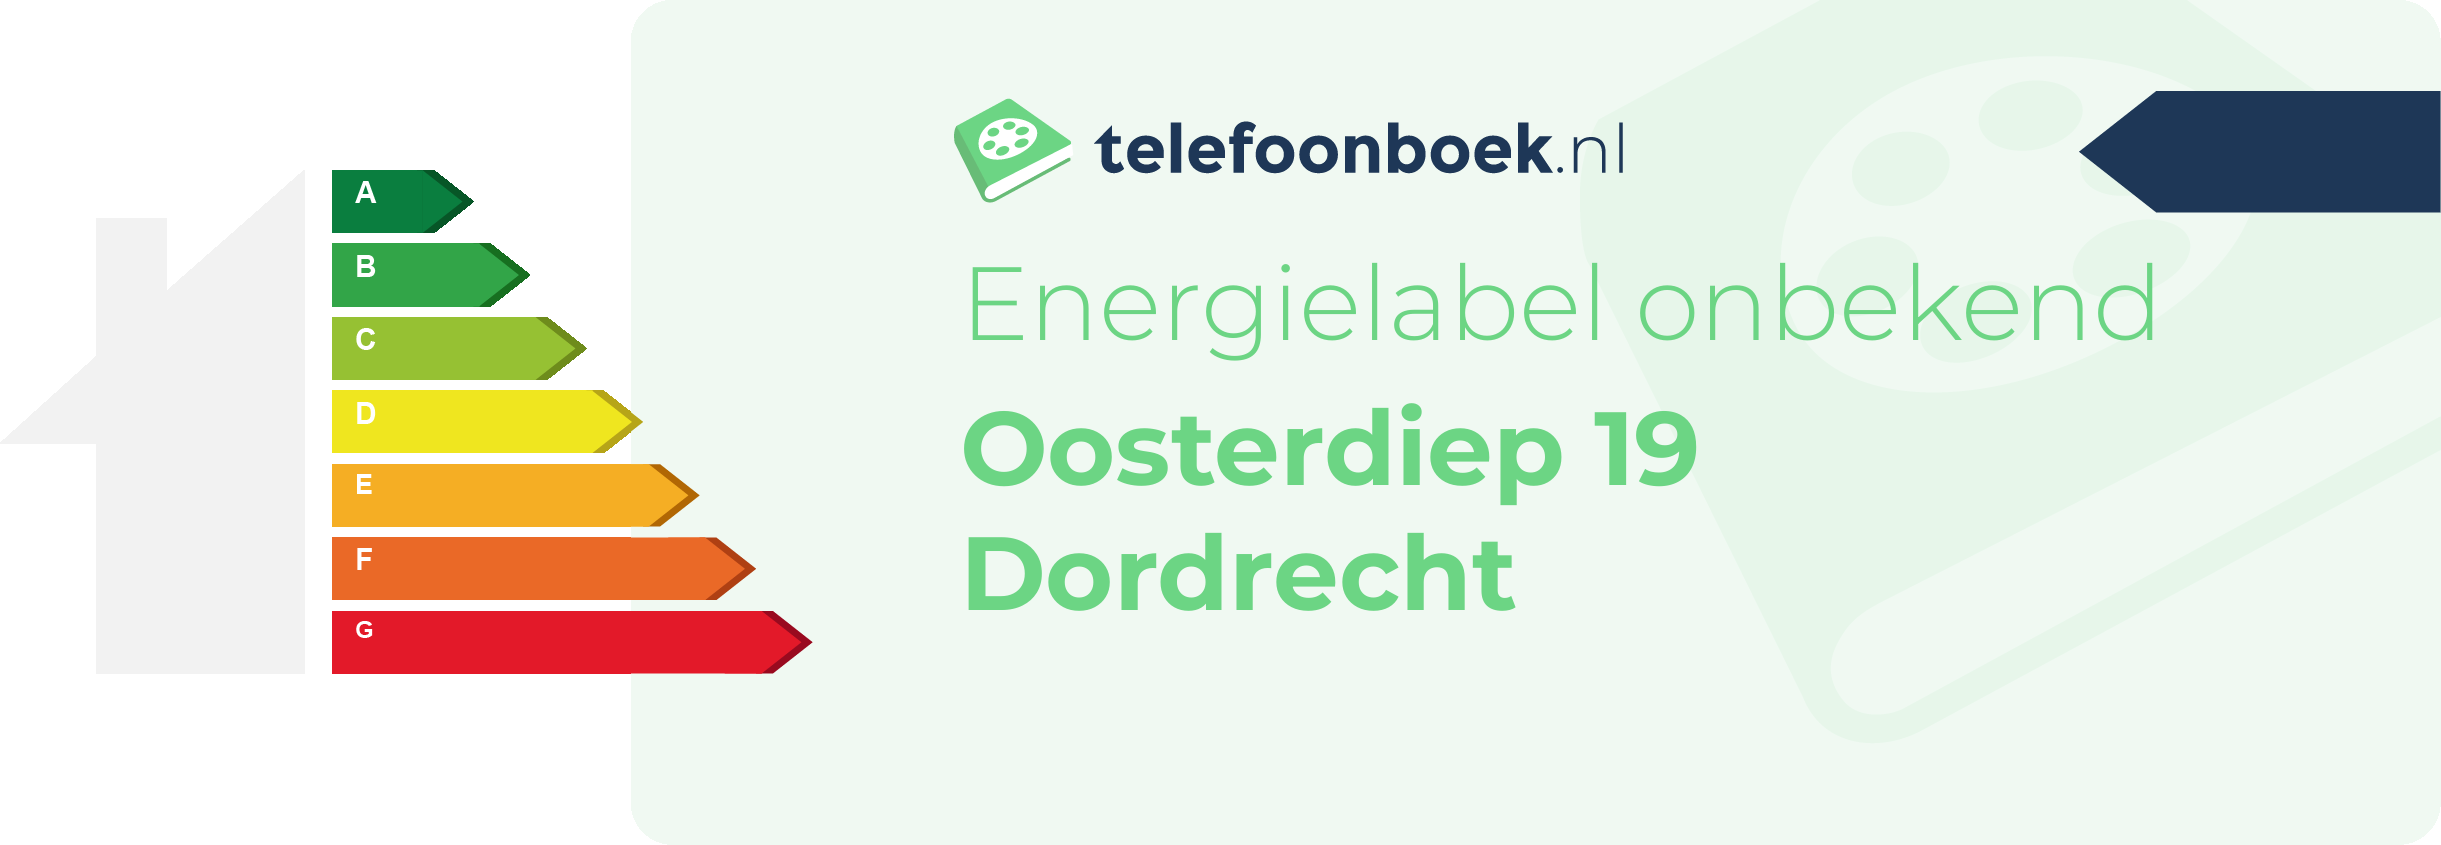 Energielabel Oosterdiep 19 Dordrecht